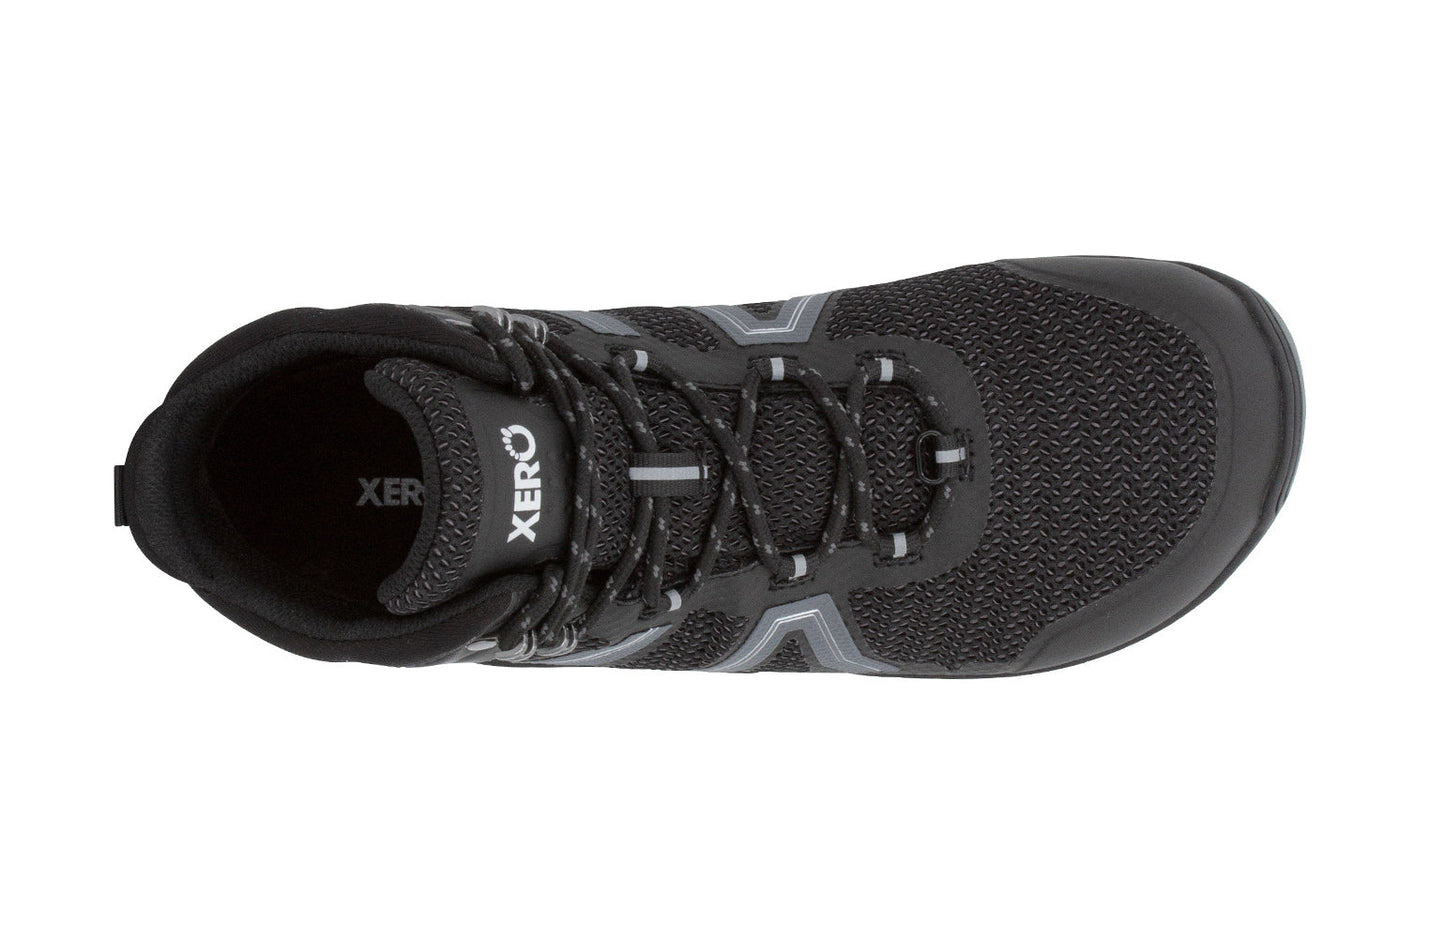 Xero Shoes Xcursion Fusion barfods støvler til mænd i farven black, top